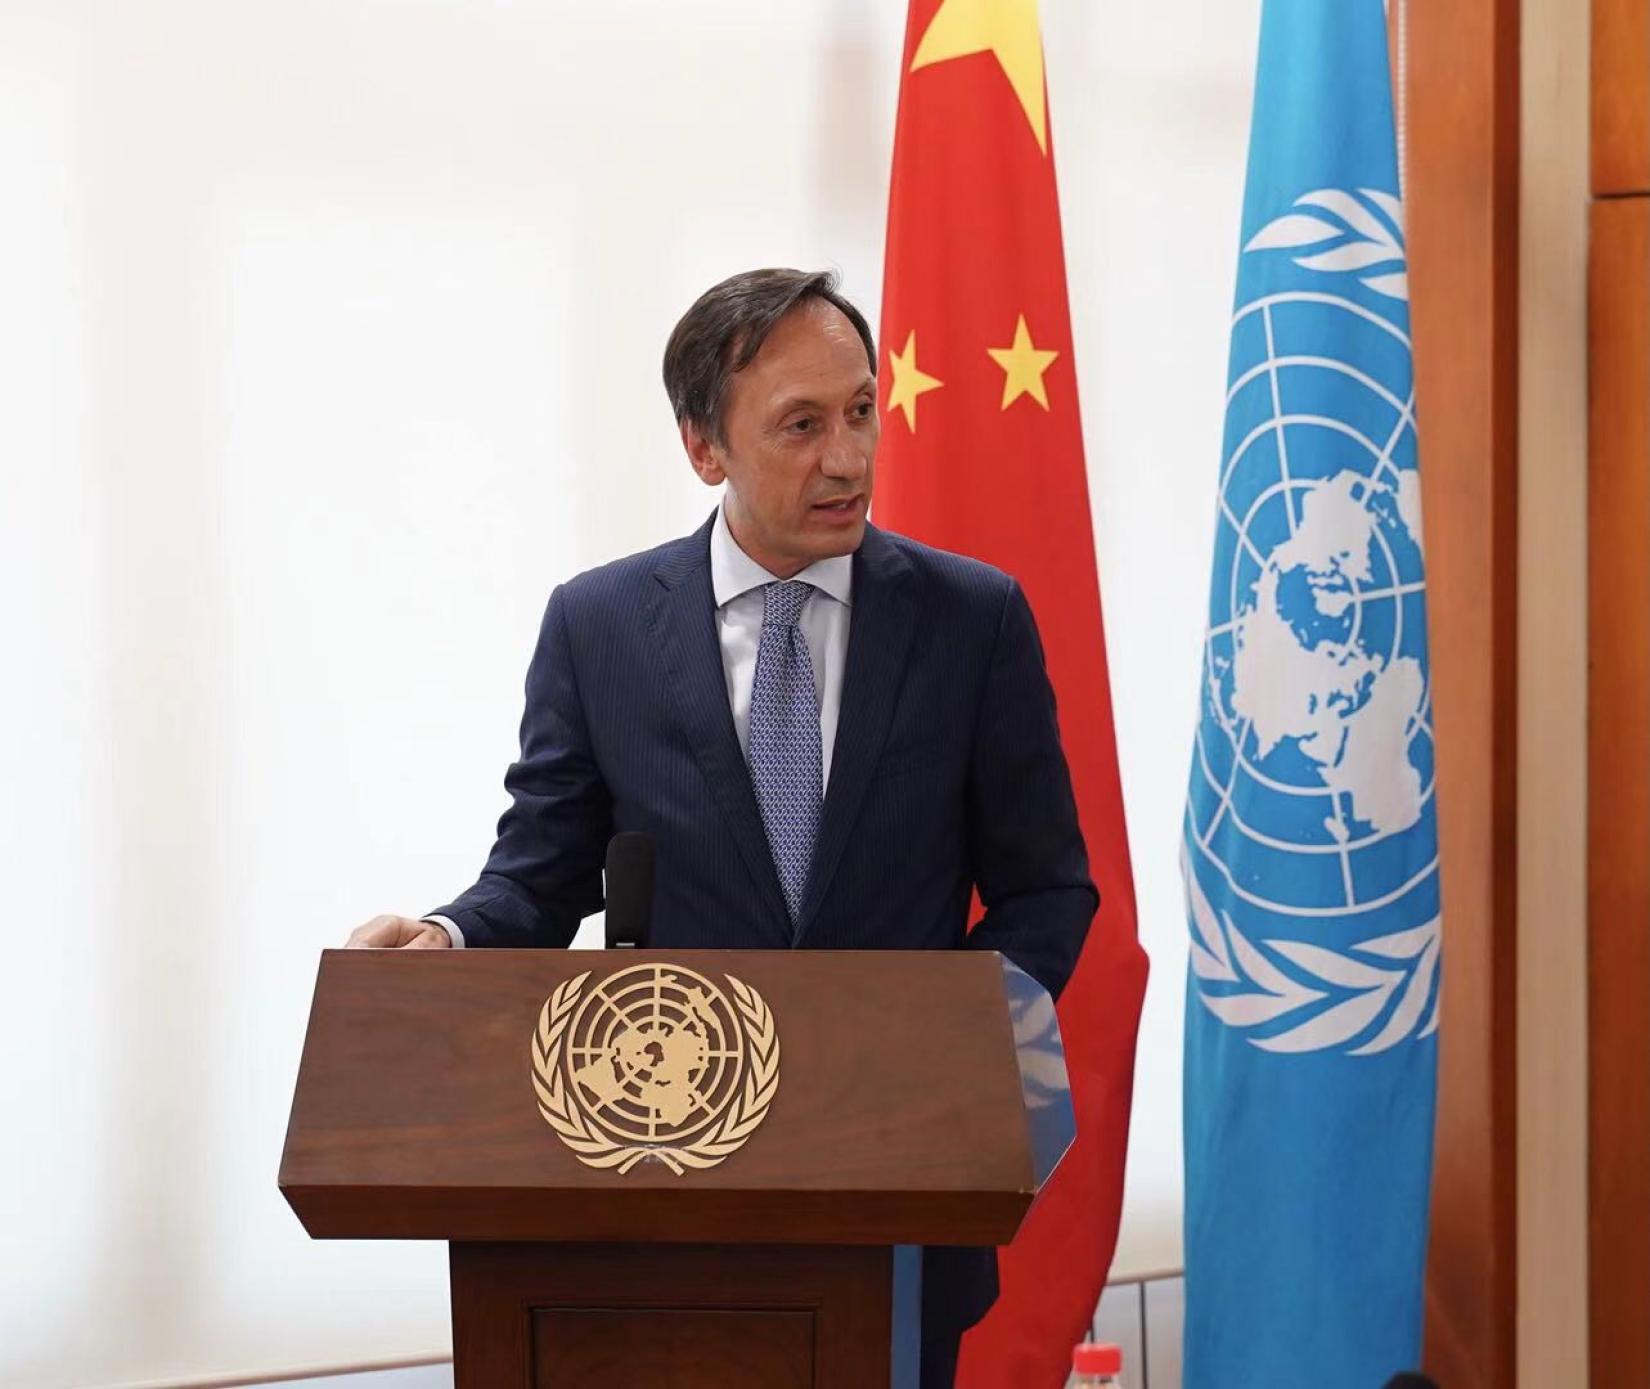 葡萄牙驻华大使杜傲杰在“北京蓝色对话”活动现场